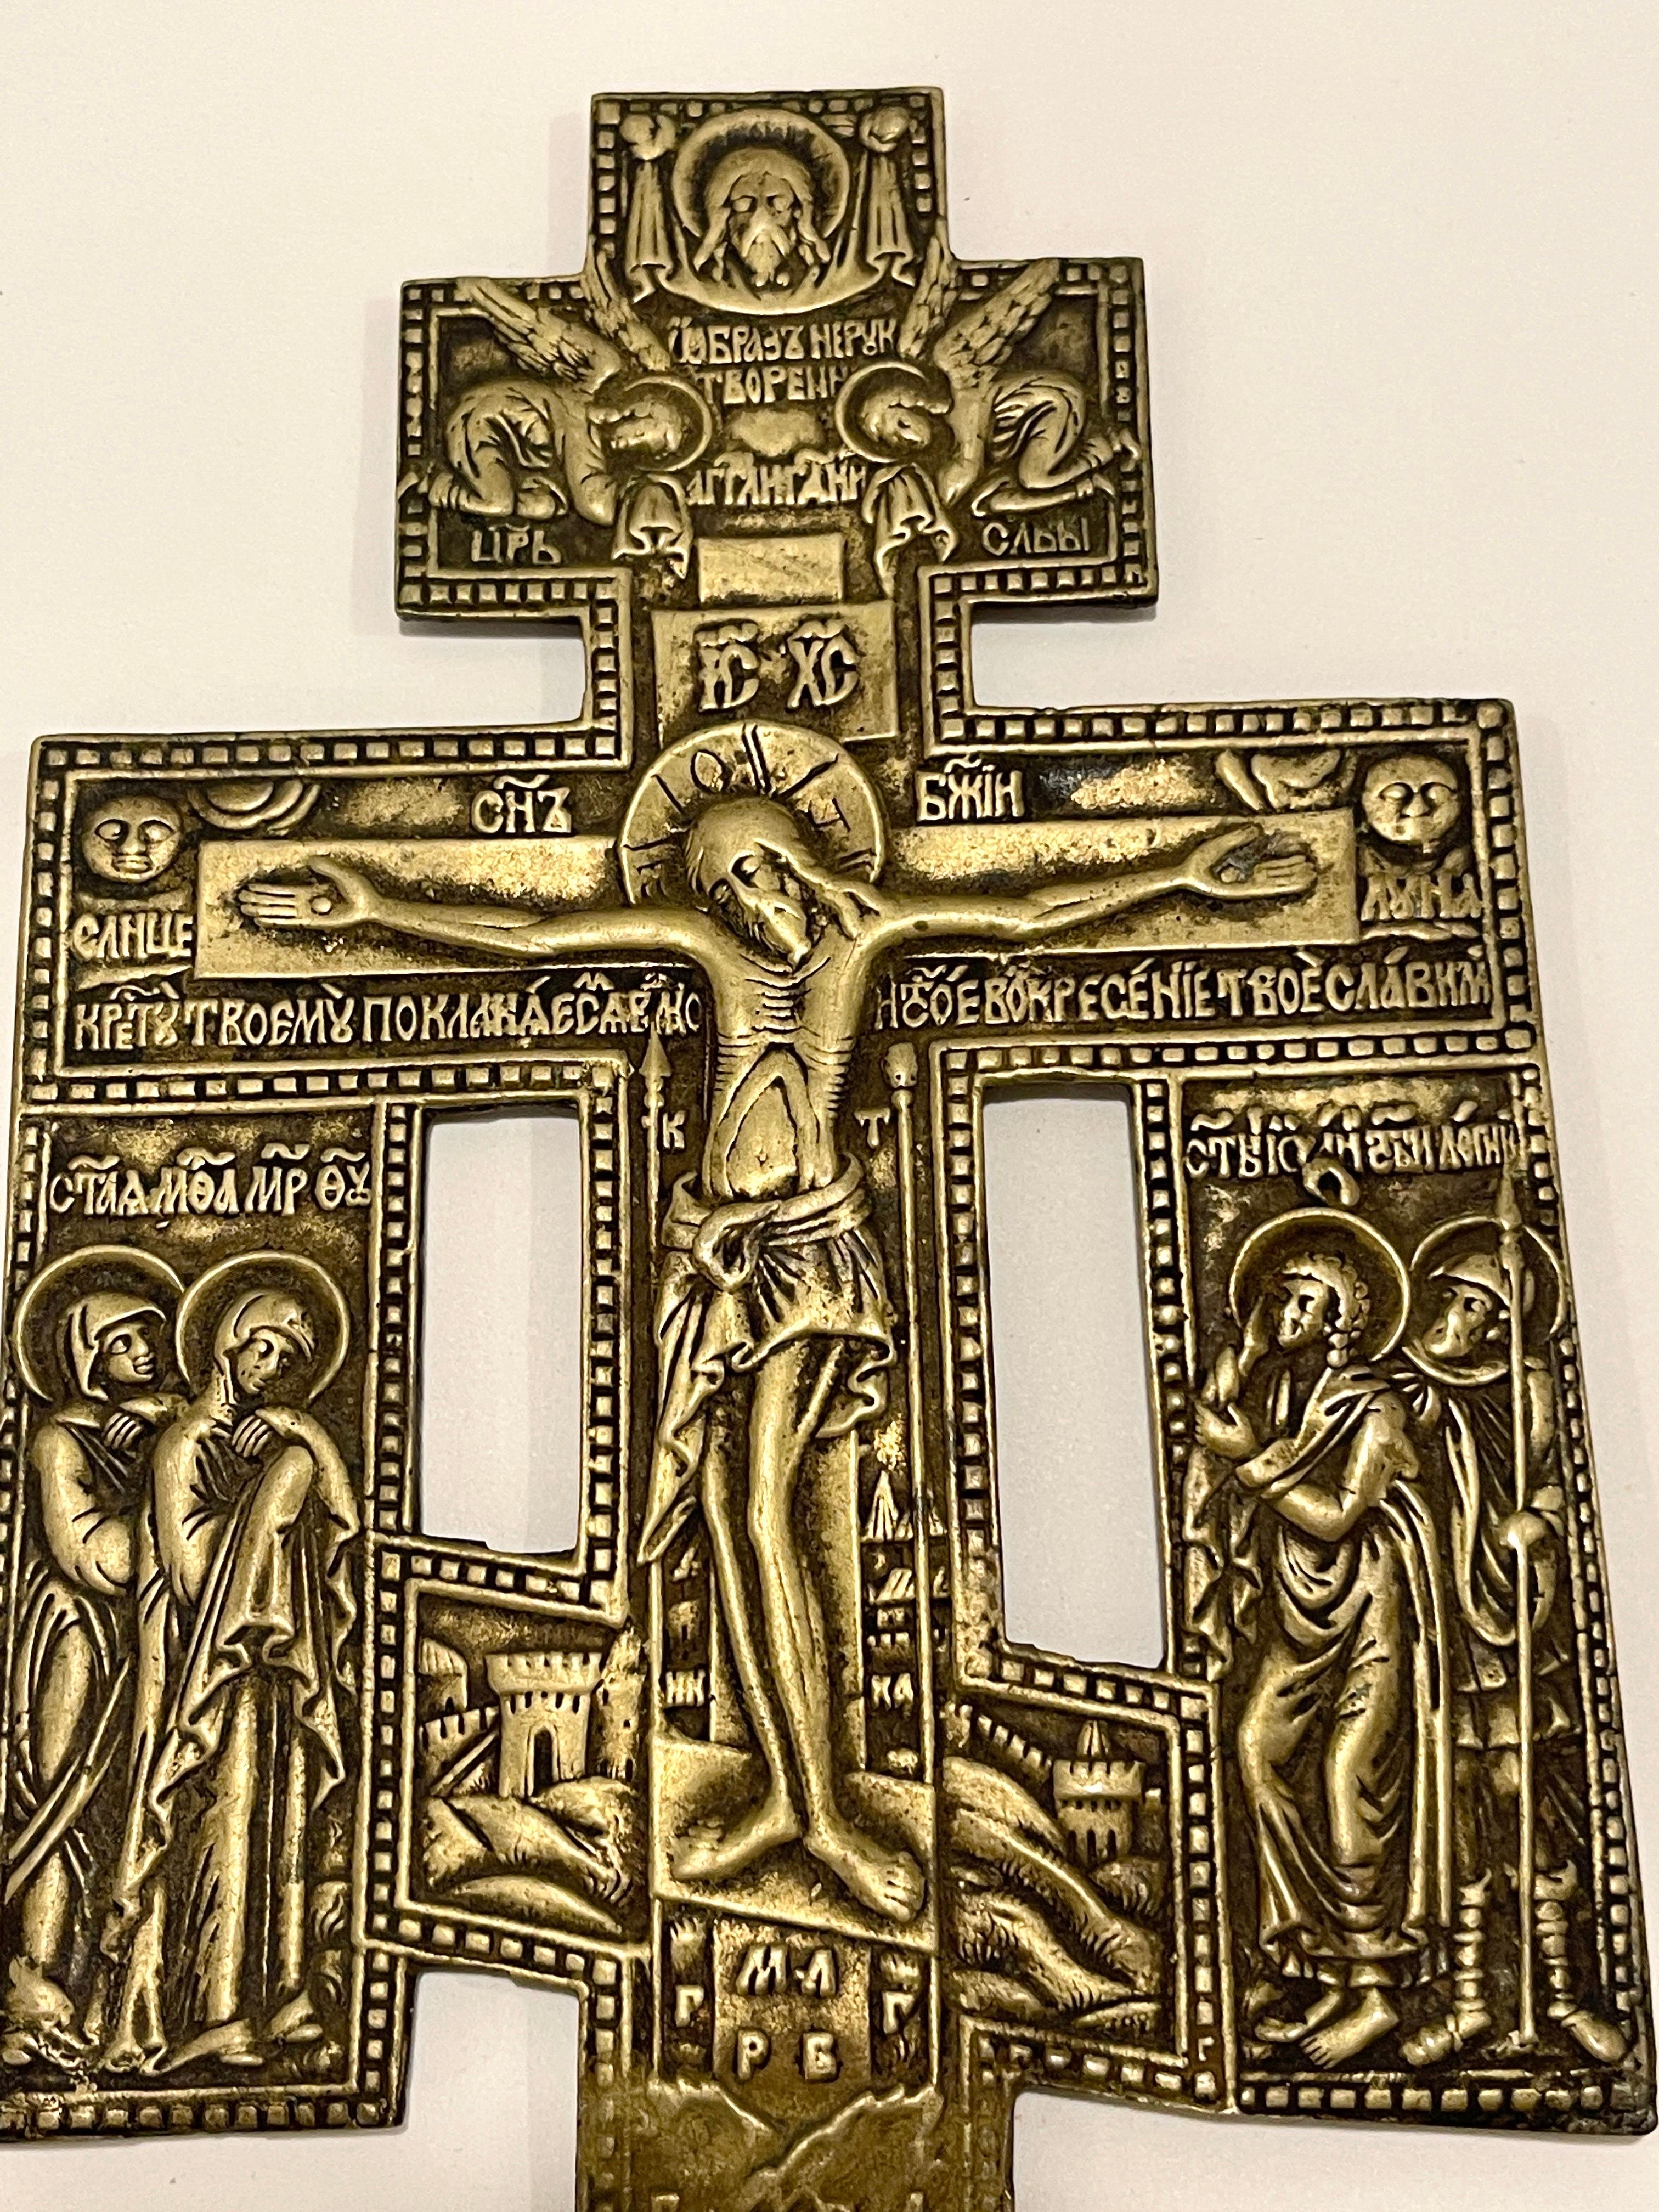 Antique croix ou crucifix chrétien orthodoxe russe en bronze doré et ornementé
Fin du 19e/début du 20e siècle, Russie ou Ukraine.

Un bronze finement coulé et doré  Croix ou crucifix chrétien orthodoxe russe . Cette œuvre est moulée de manière